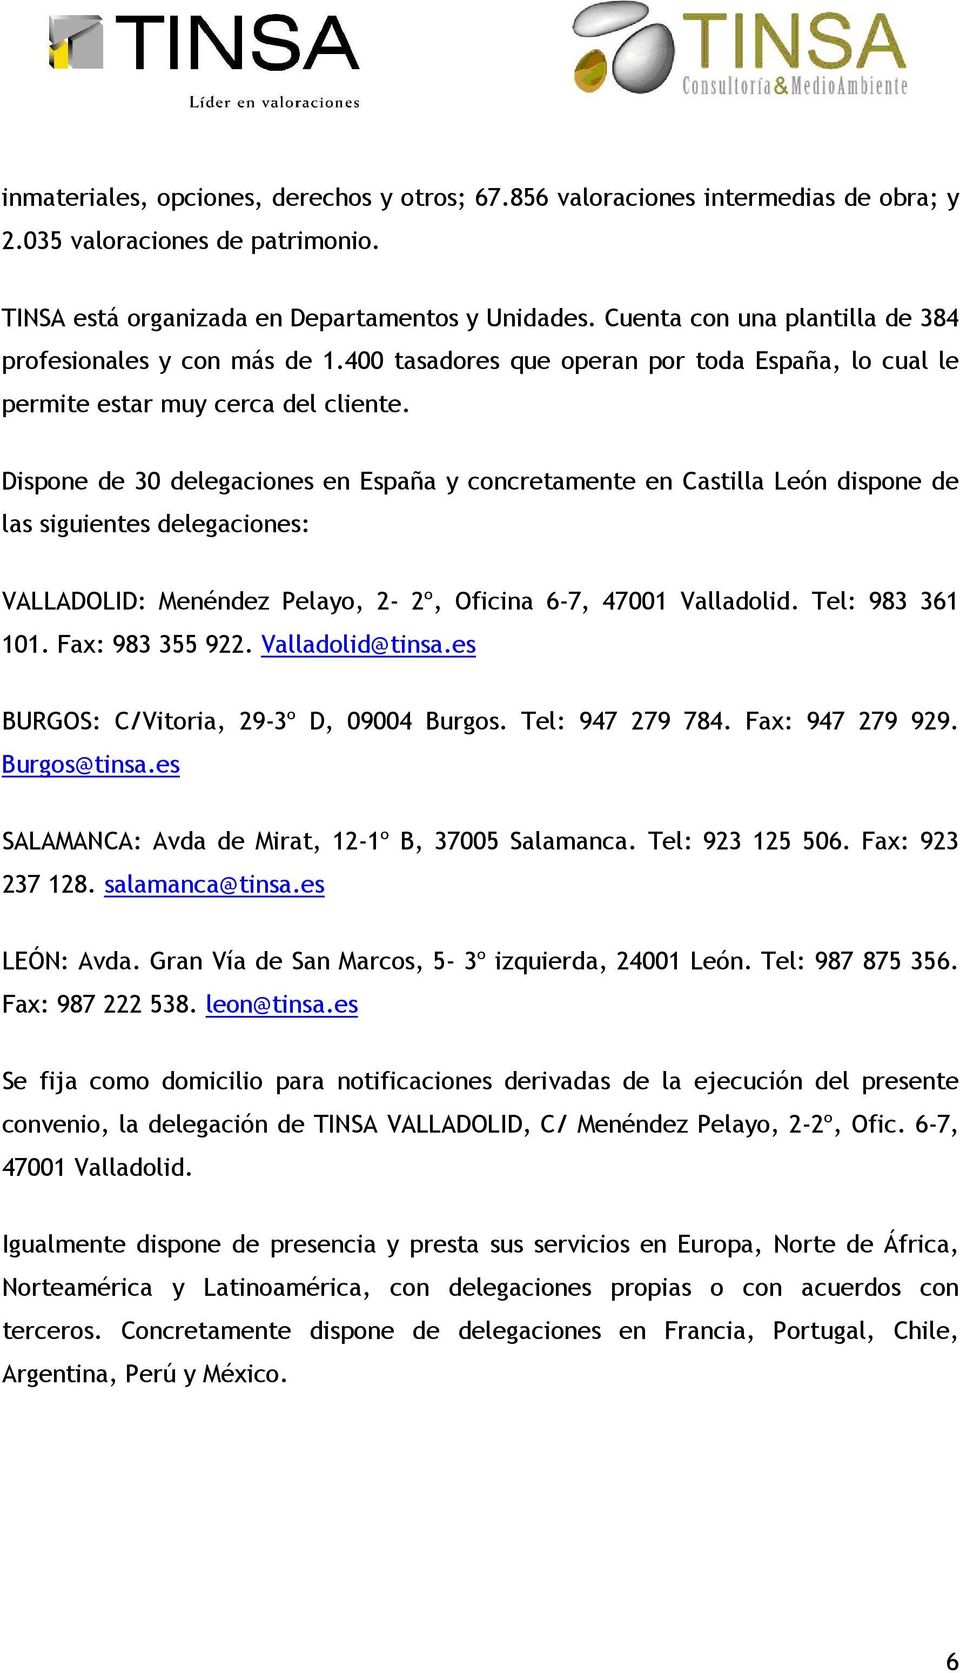 Dispone de 30 delegaciones en España y concretamente en Castilla León dispone de las siguientes delegaciones: VALLADOLID: Menéndez Pelayo, 2-2º, Oficina 6-7, 47001 Valladolid. Tel: 983 361 101.